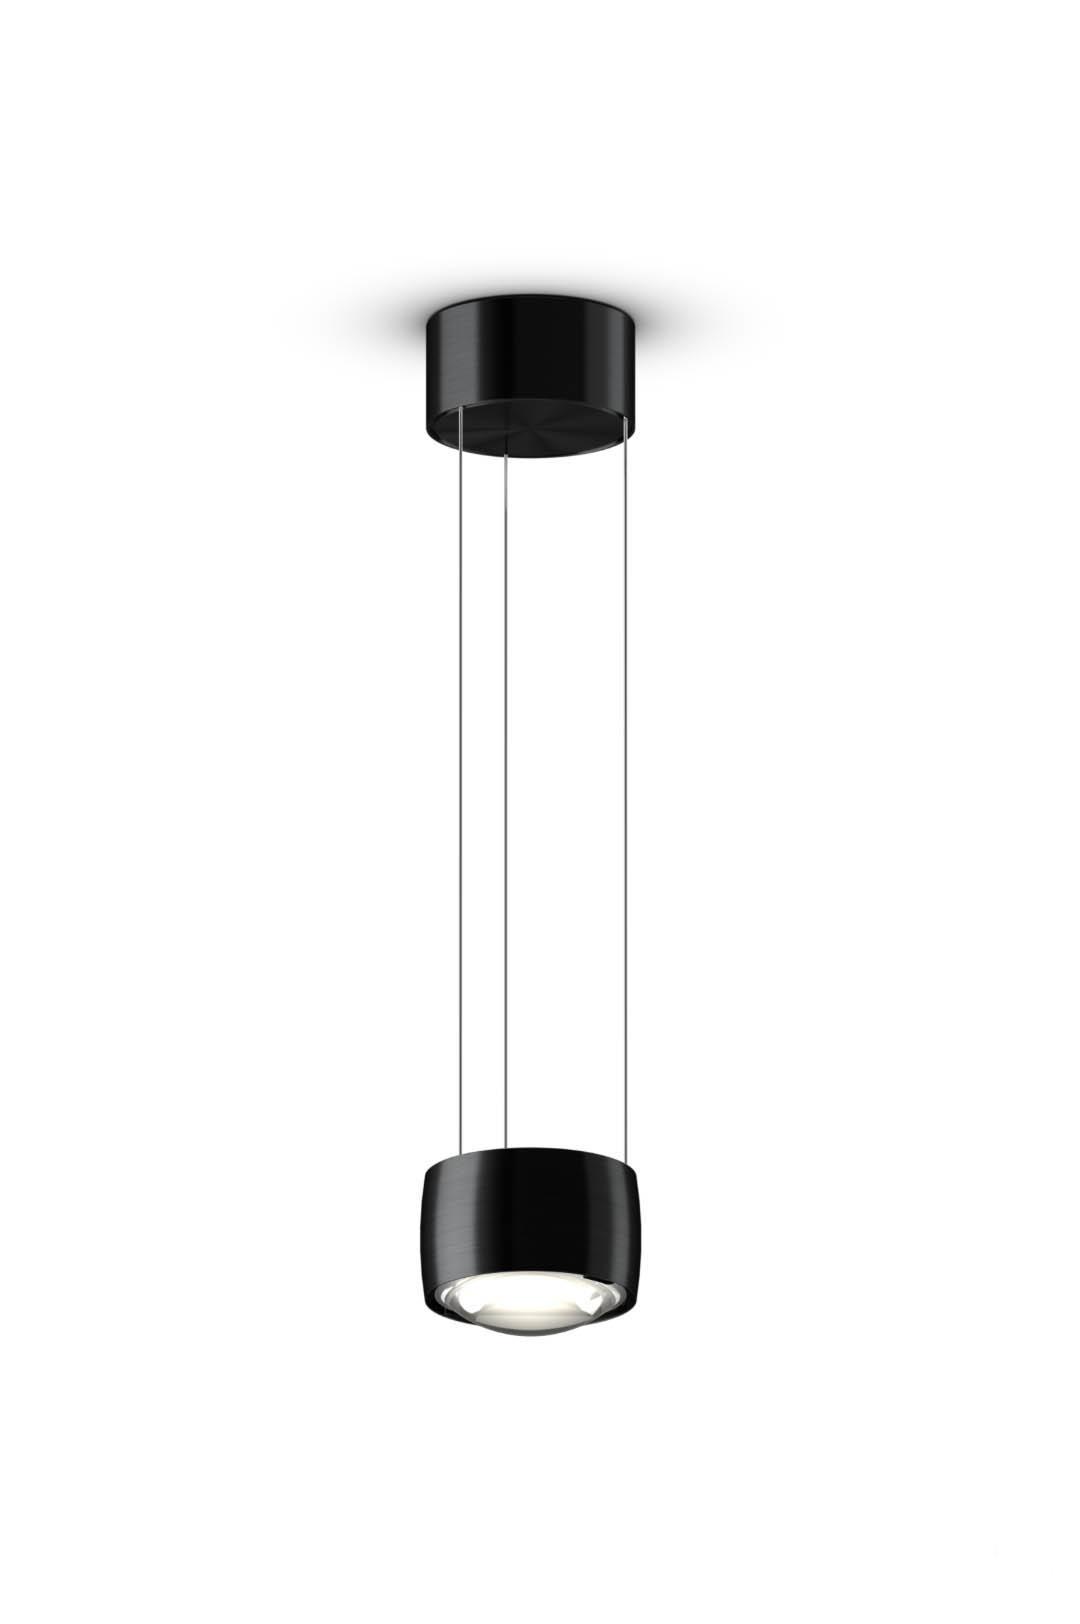 Подвесной светильник Sento sospeso air от Occhio — Фотография 1